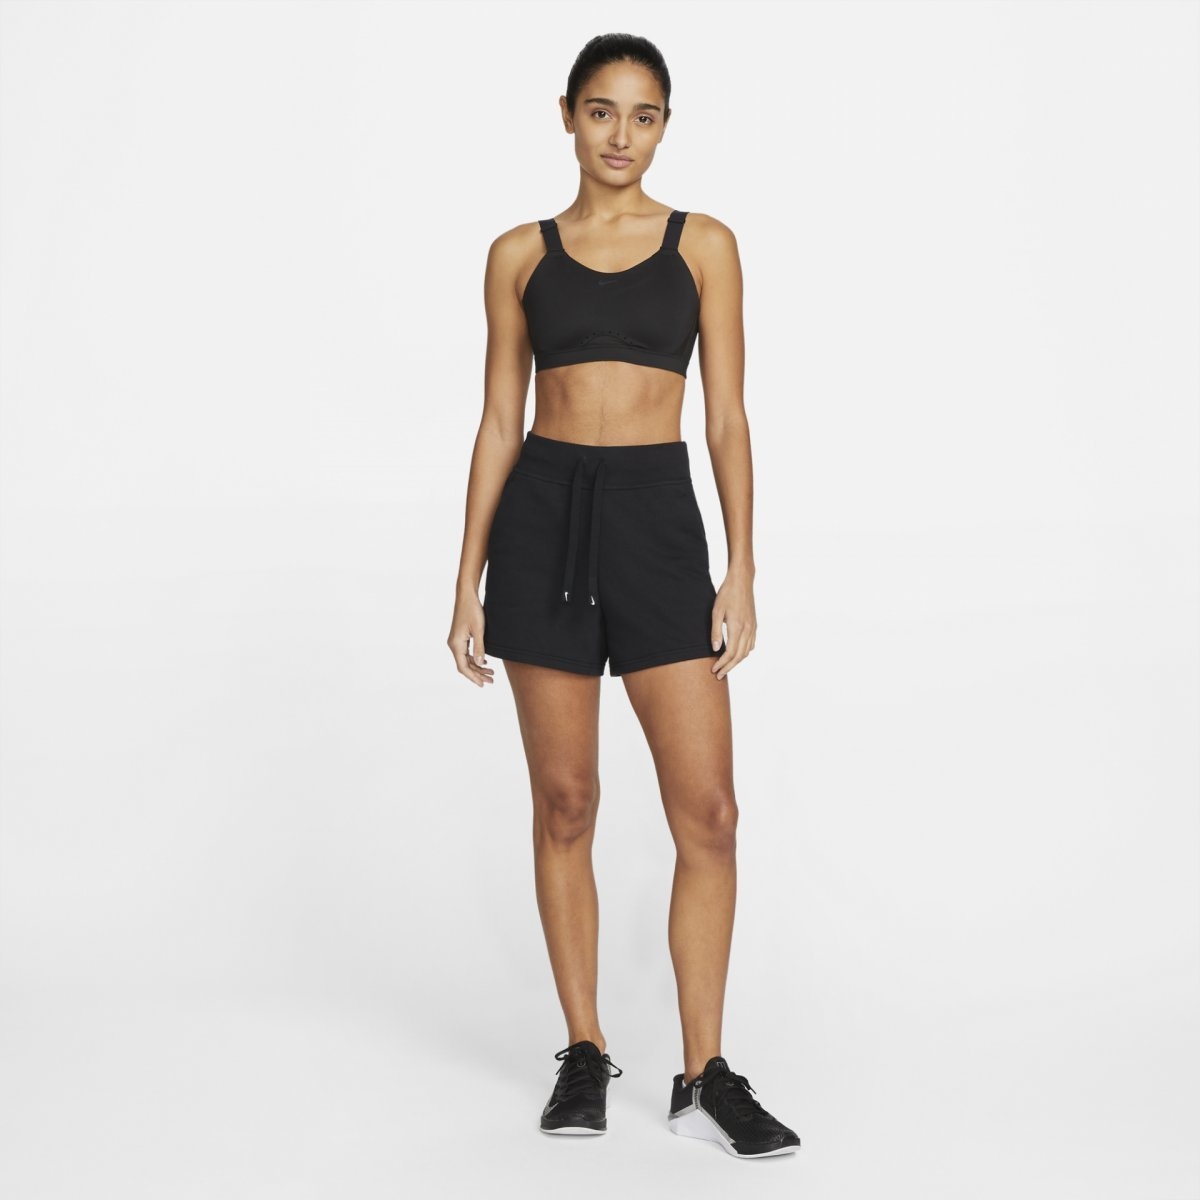 Nike Woman's Bra Dri-FIT